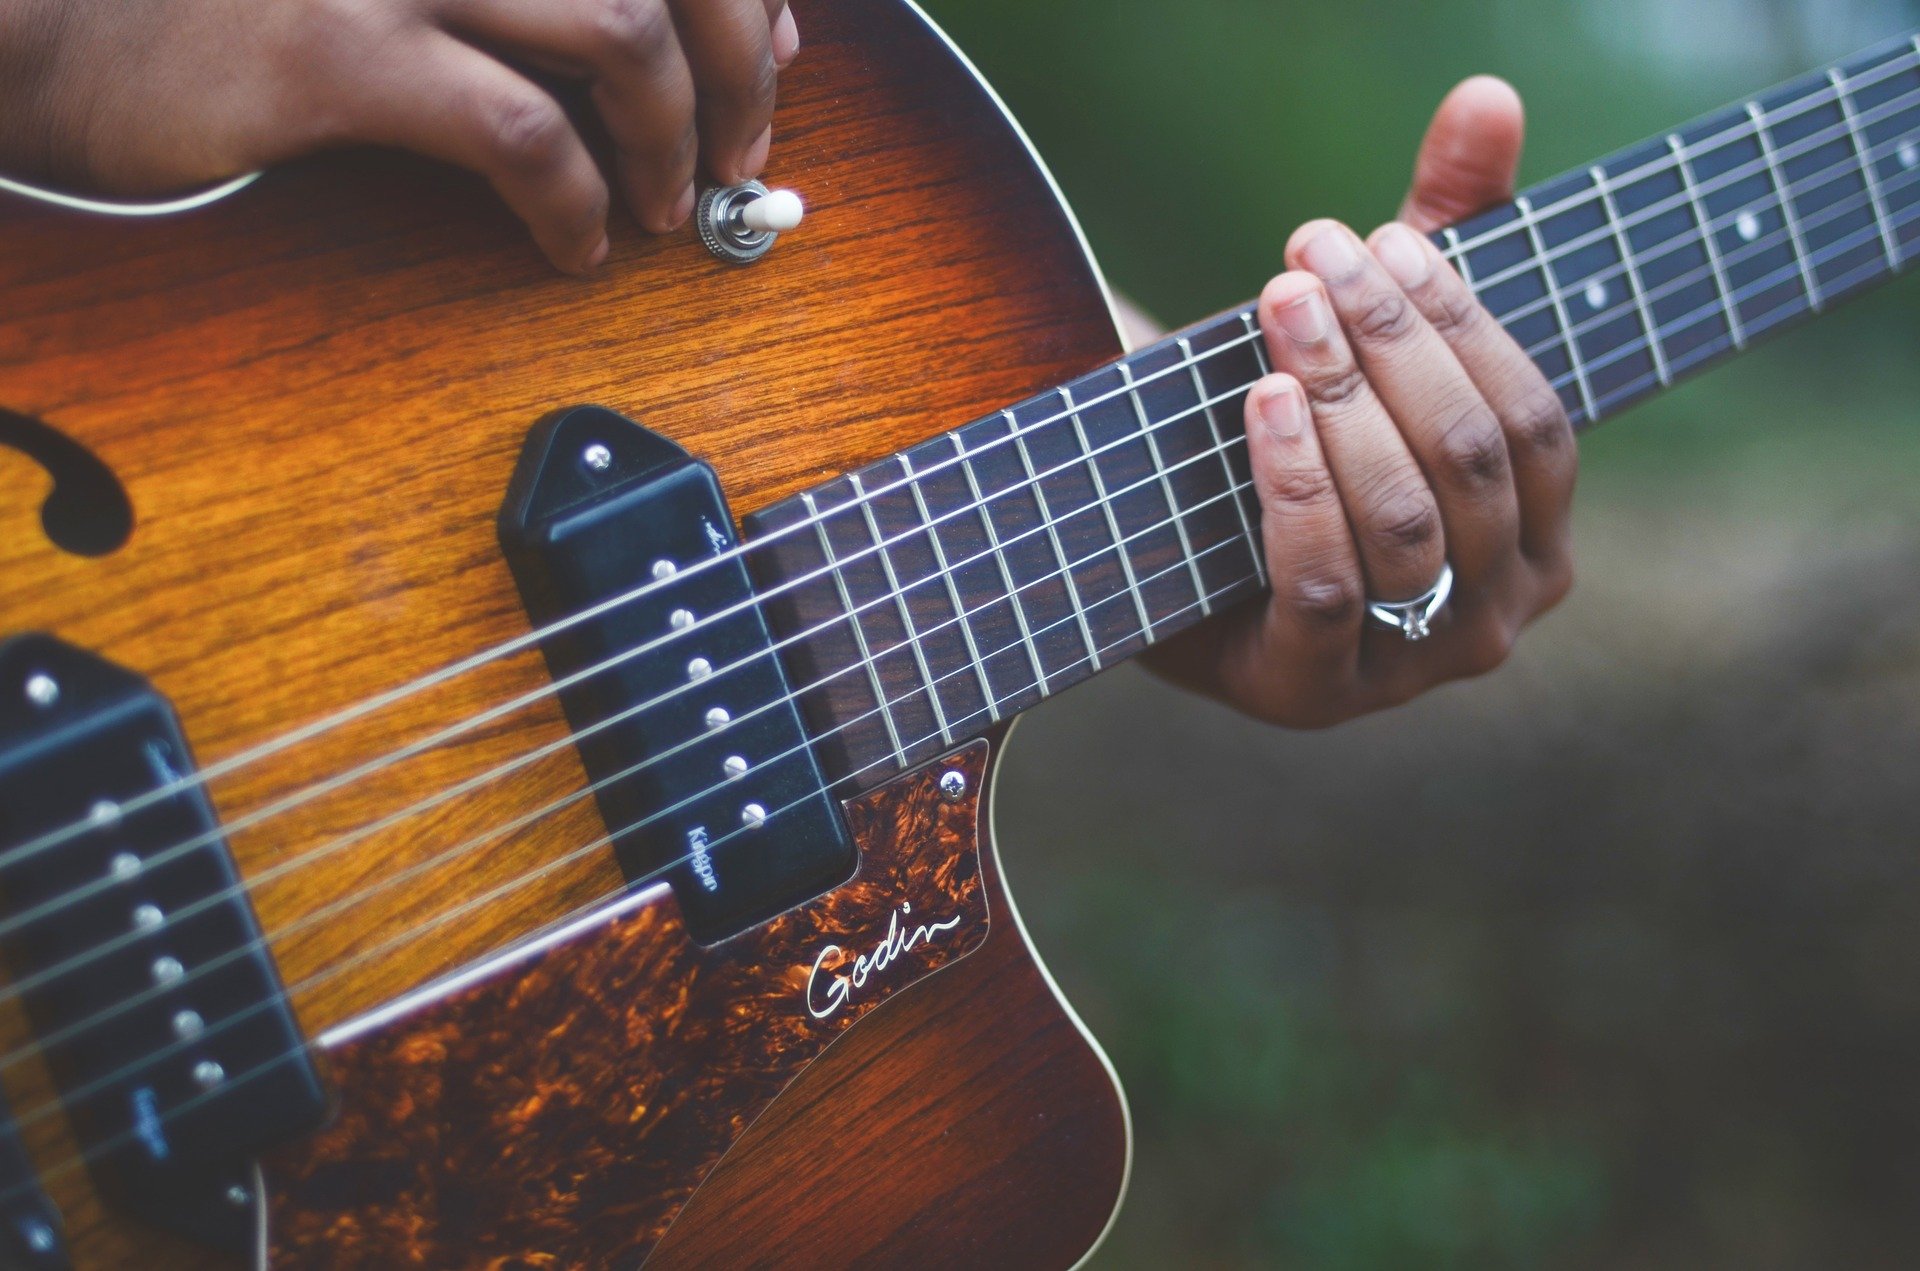 Comment le cerveau permet la créativité en improvisation musicale?